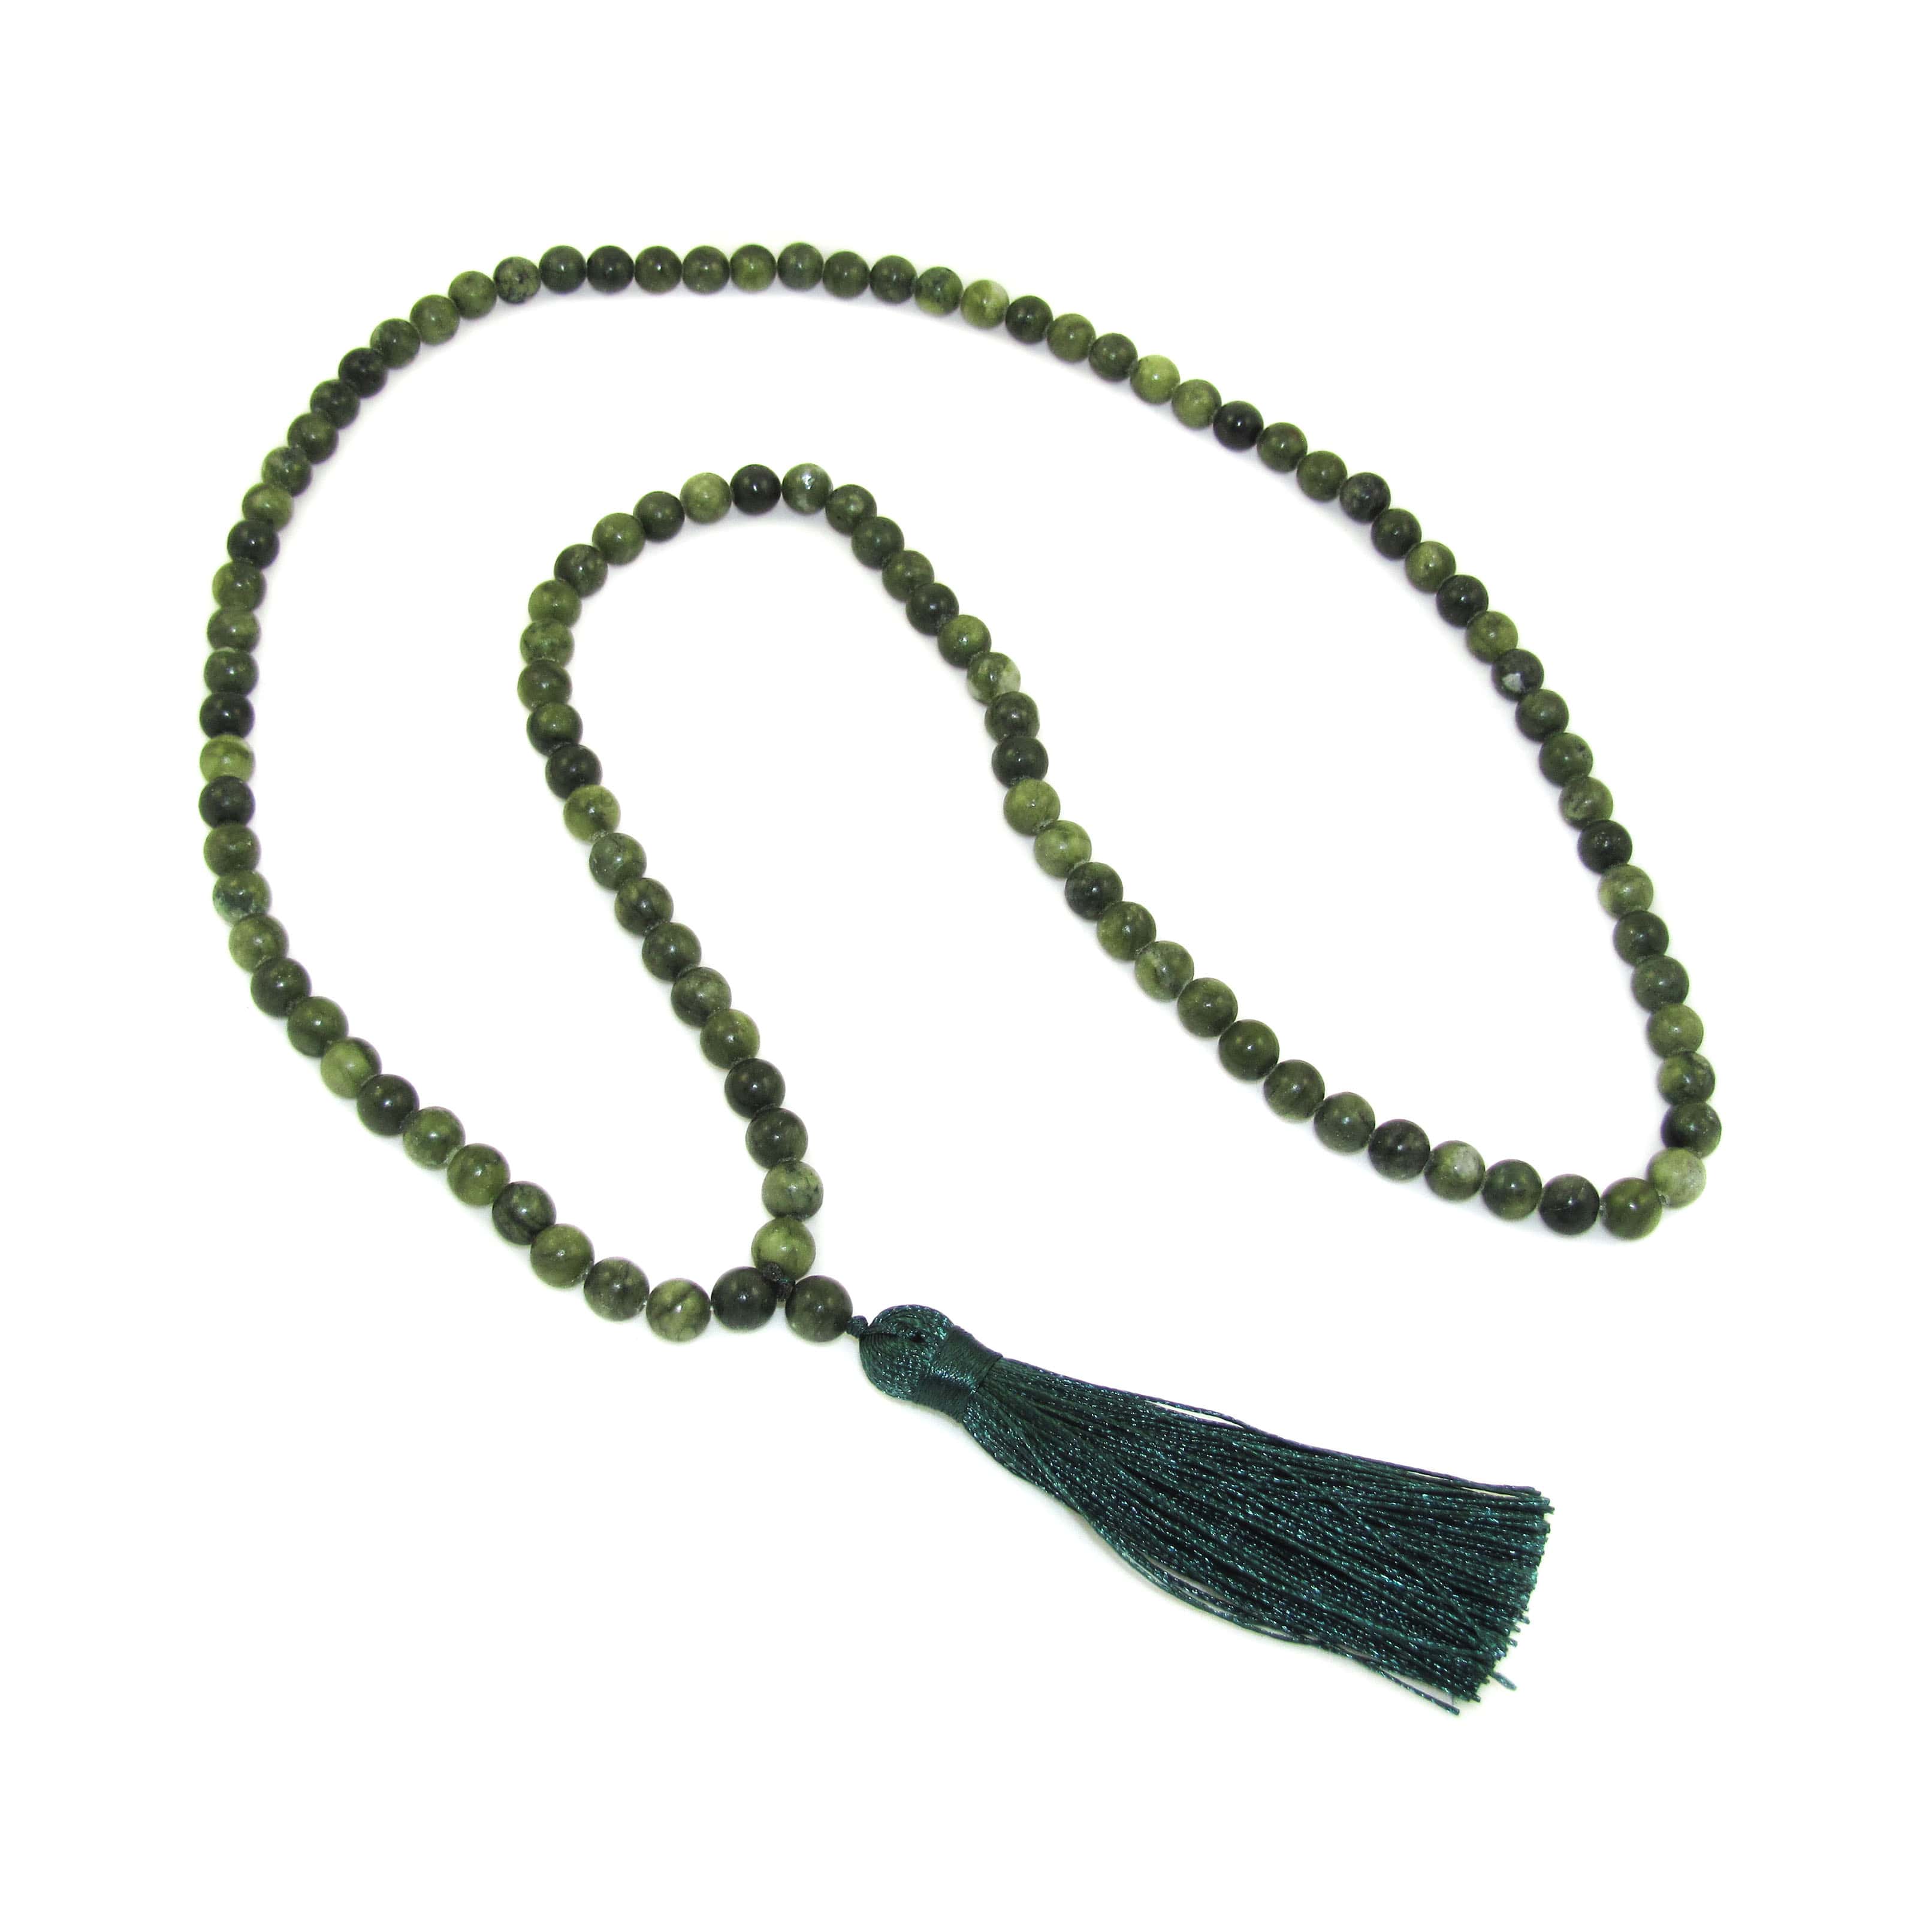 Xinyi Jade Edelstein Heilstein Mala XL, grün - Gebetskette mit langer Quaste, Weisheit - Gleichgewicht - Harmonie